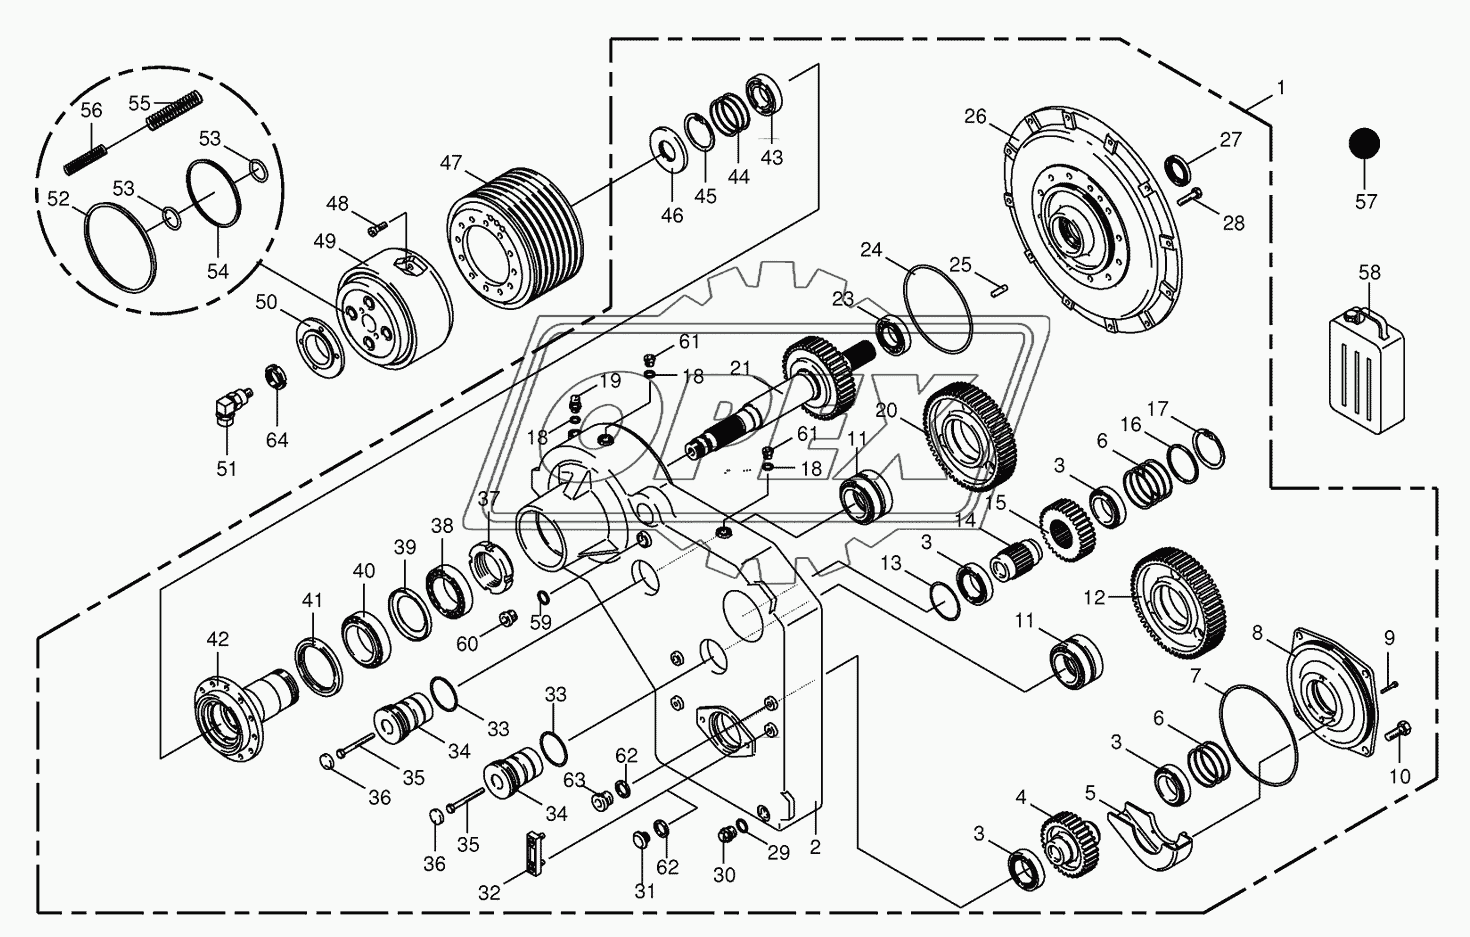 Motor output gear 2